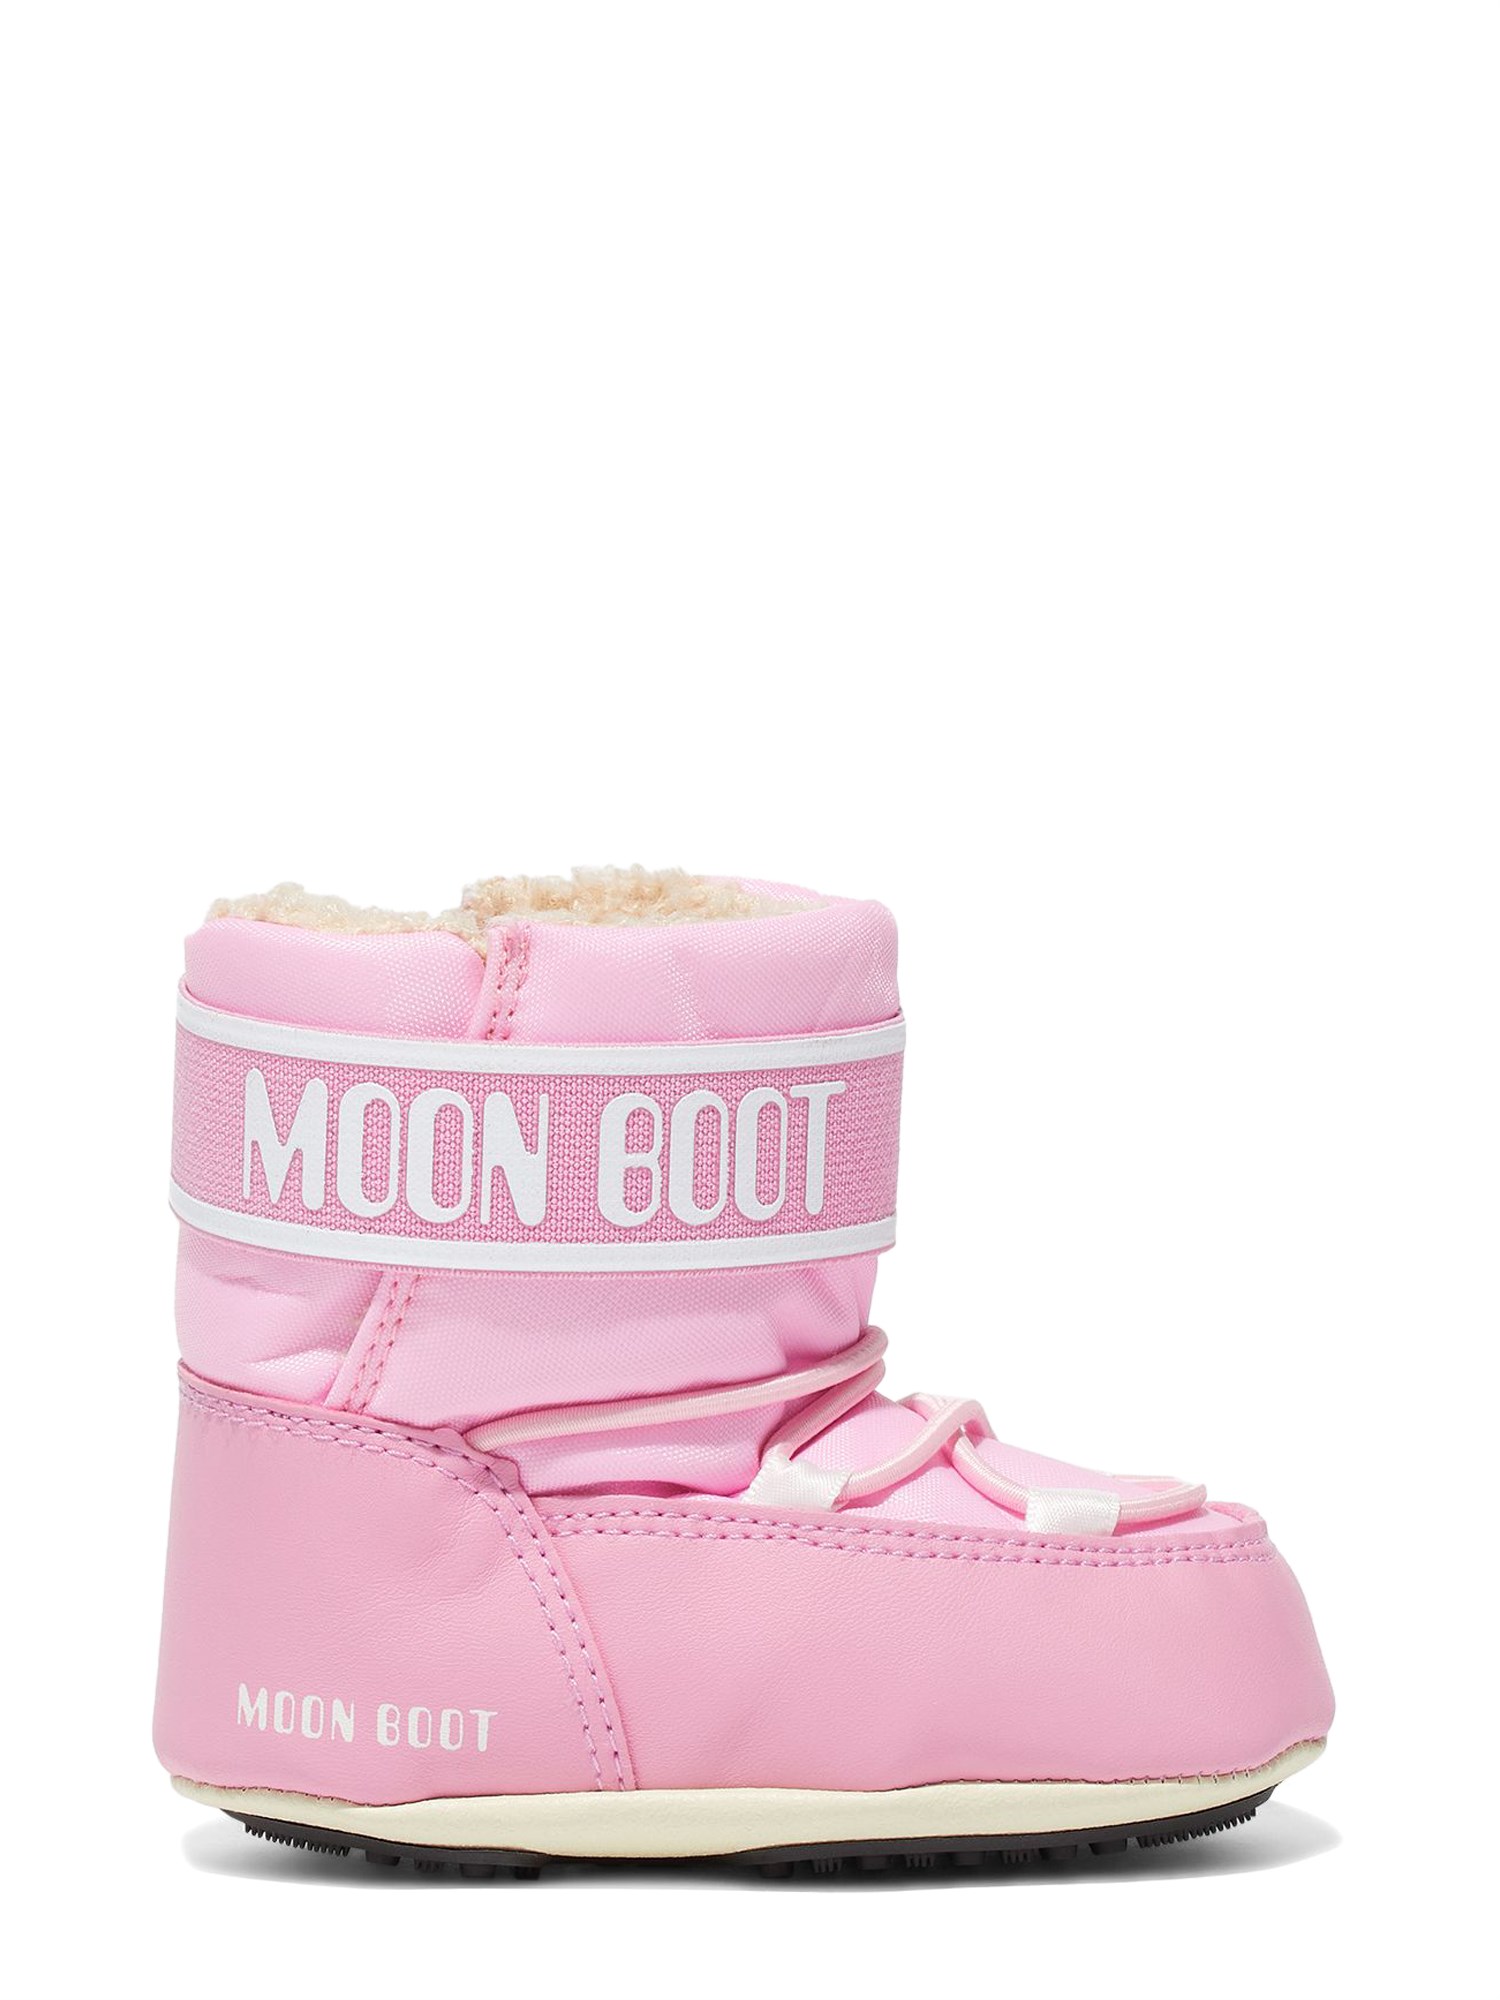 moon boot moon boot crib